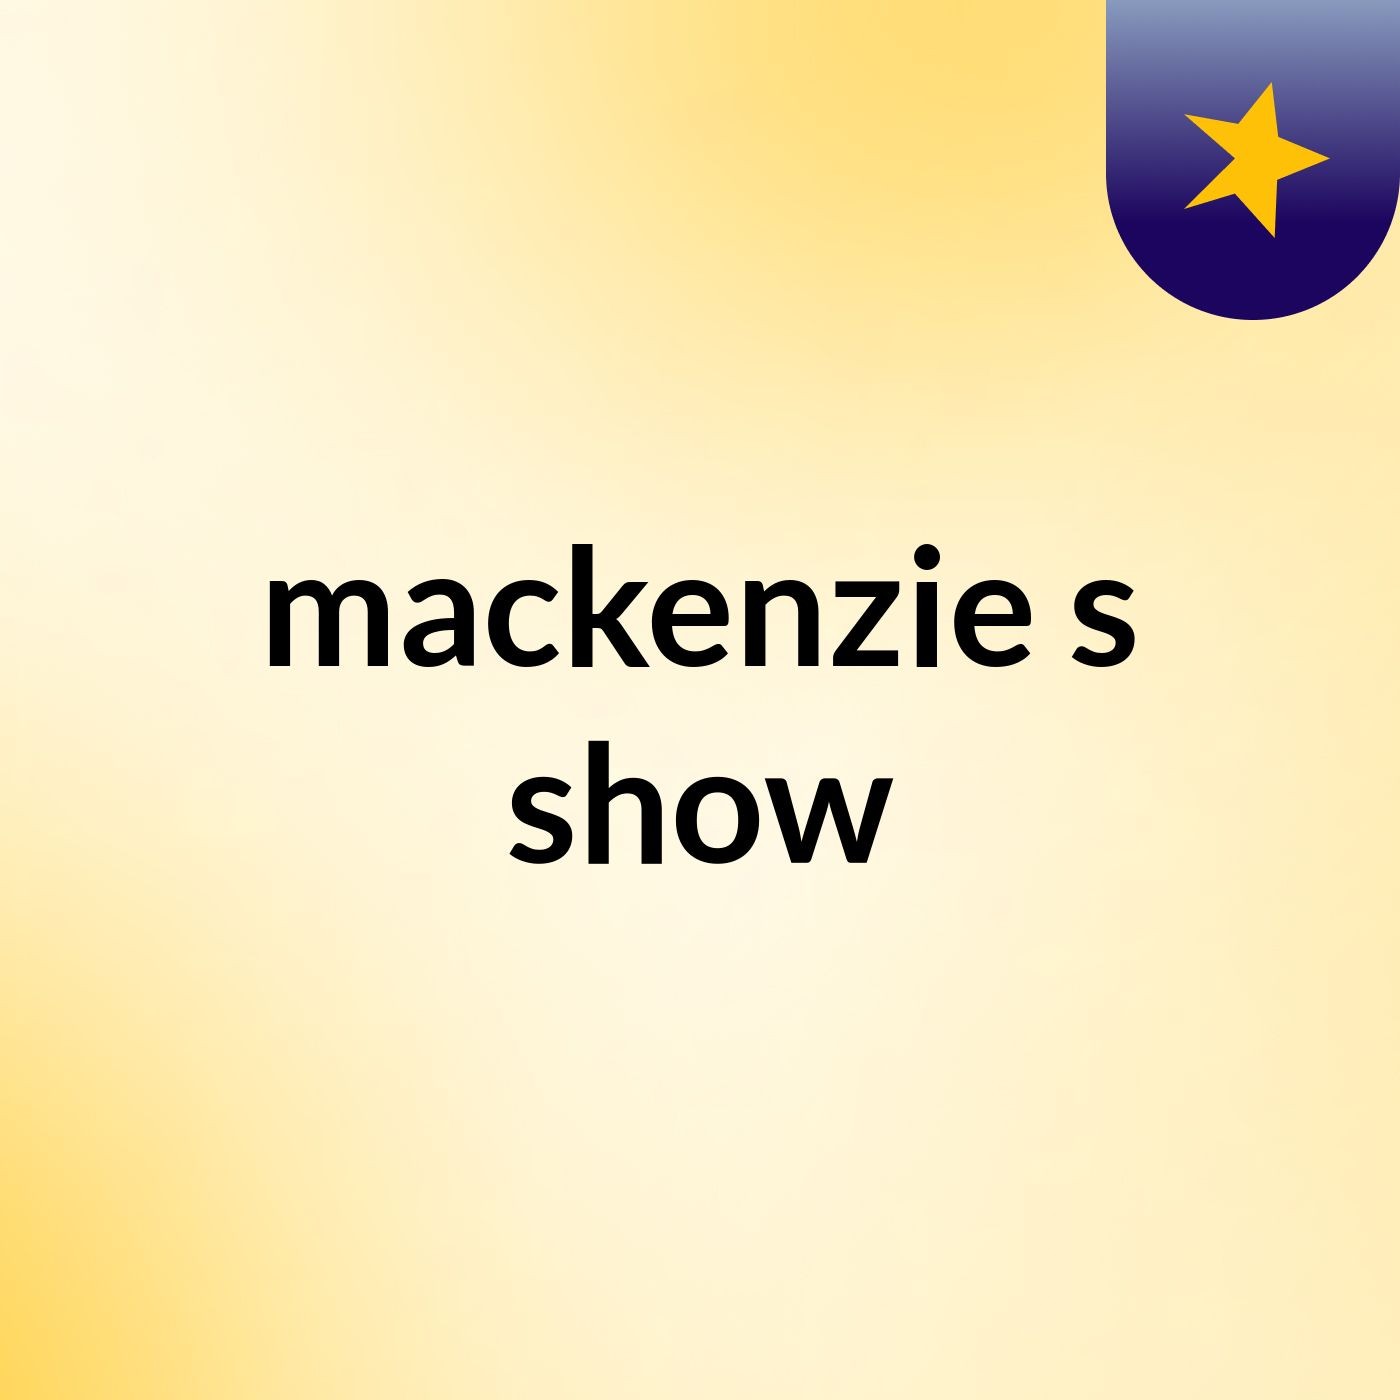 mackenzie's show